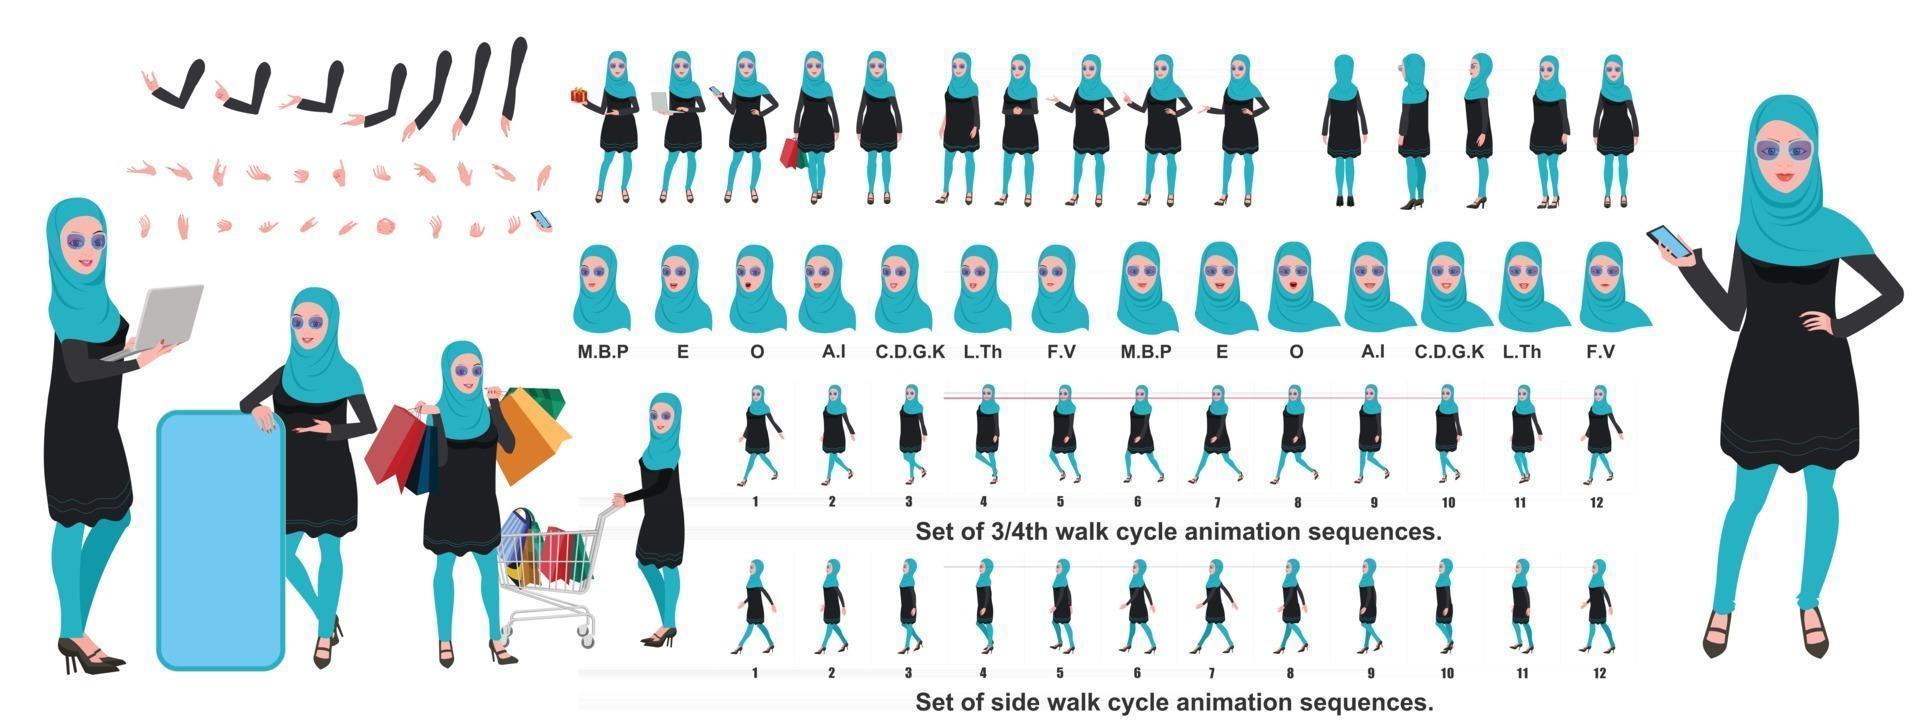 islamisches Mädchen Charakter Design Modellblatt mit Walk Cycle Animation Mädchen Charakter Design Vorderseite Seite Rückansicht und Erkläranimation Posen Zeichensatz mit verschiedenen Ansichten und Lippensynchronisation vektor